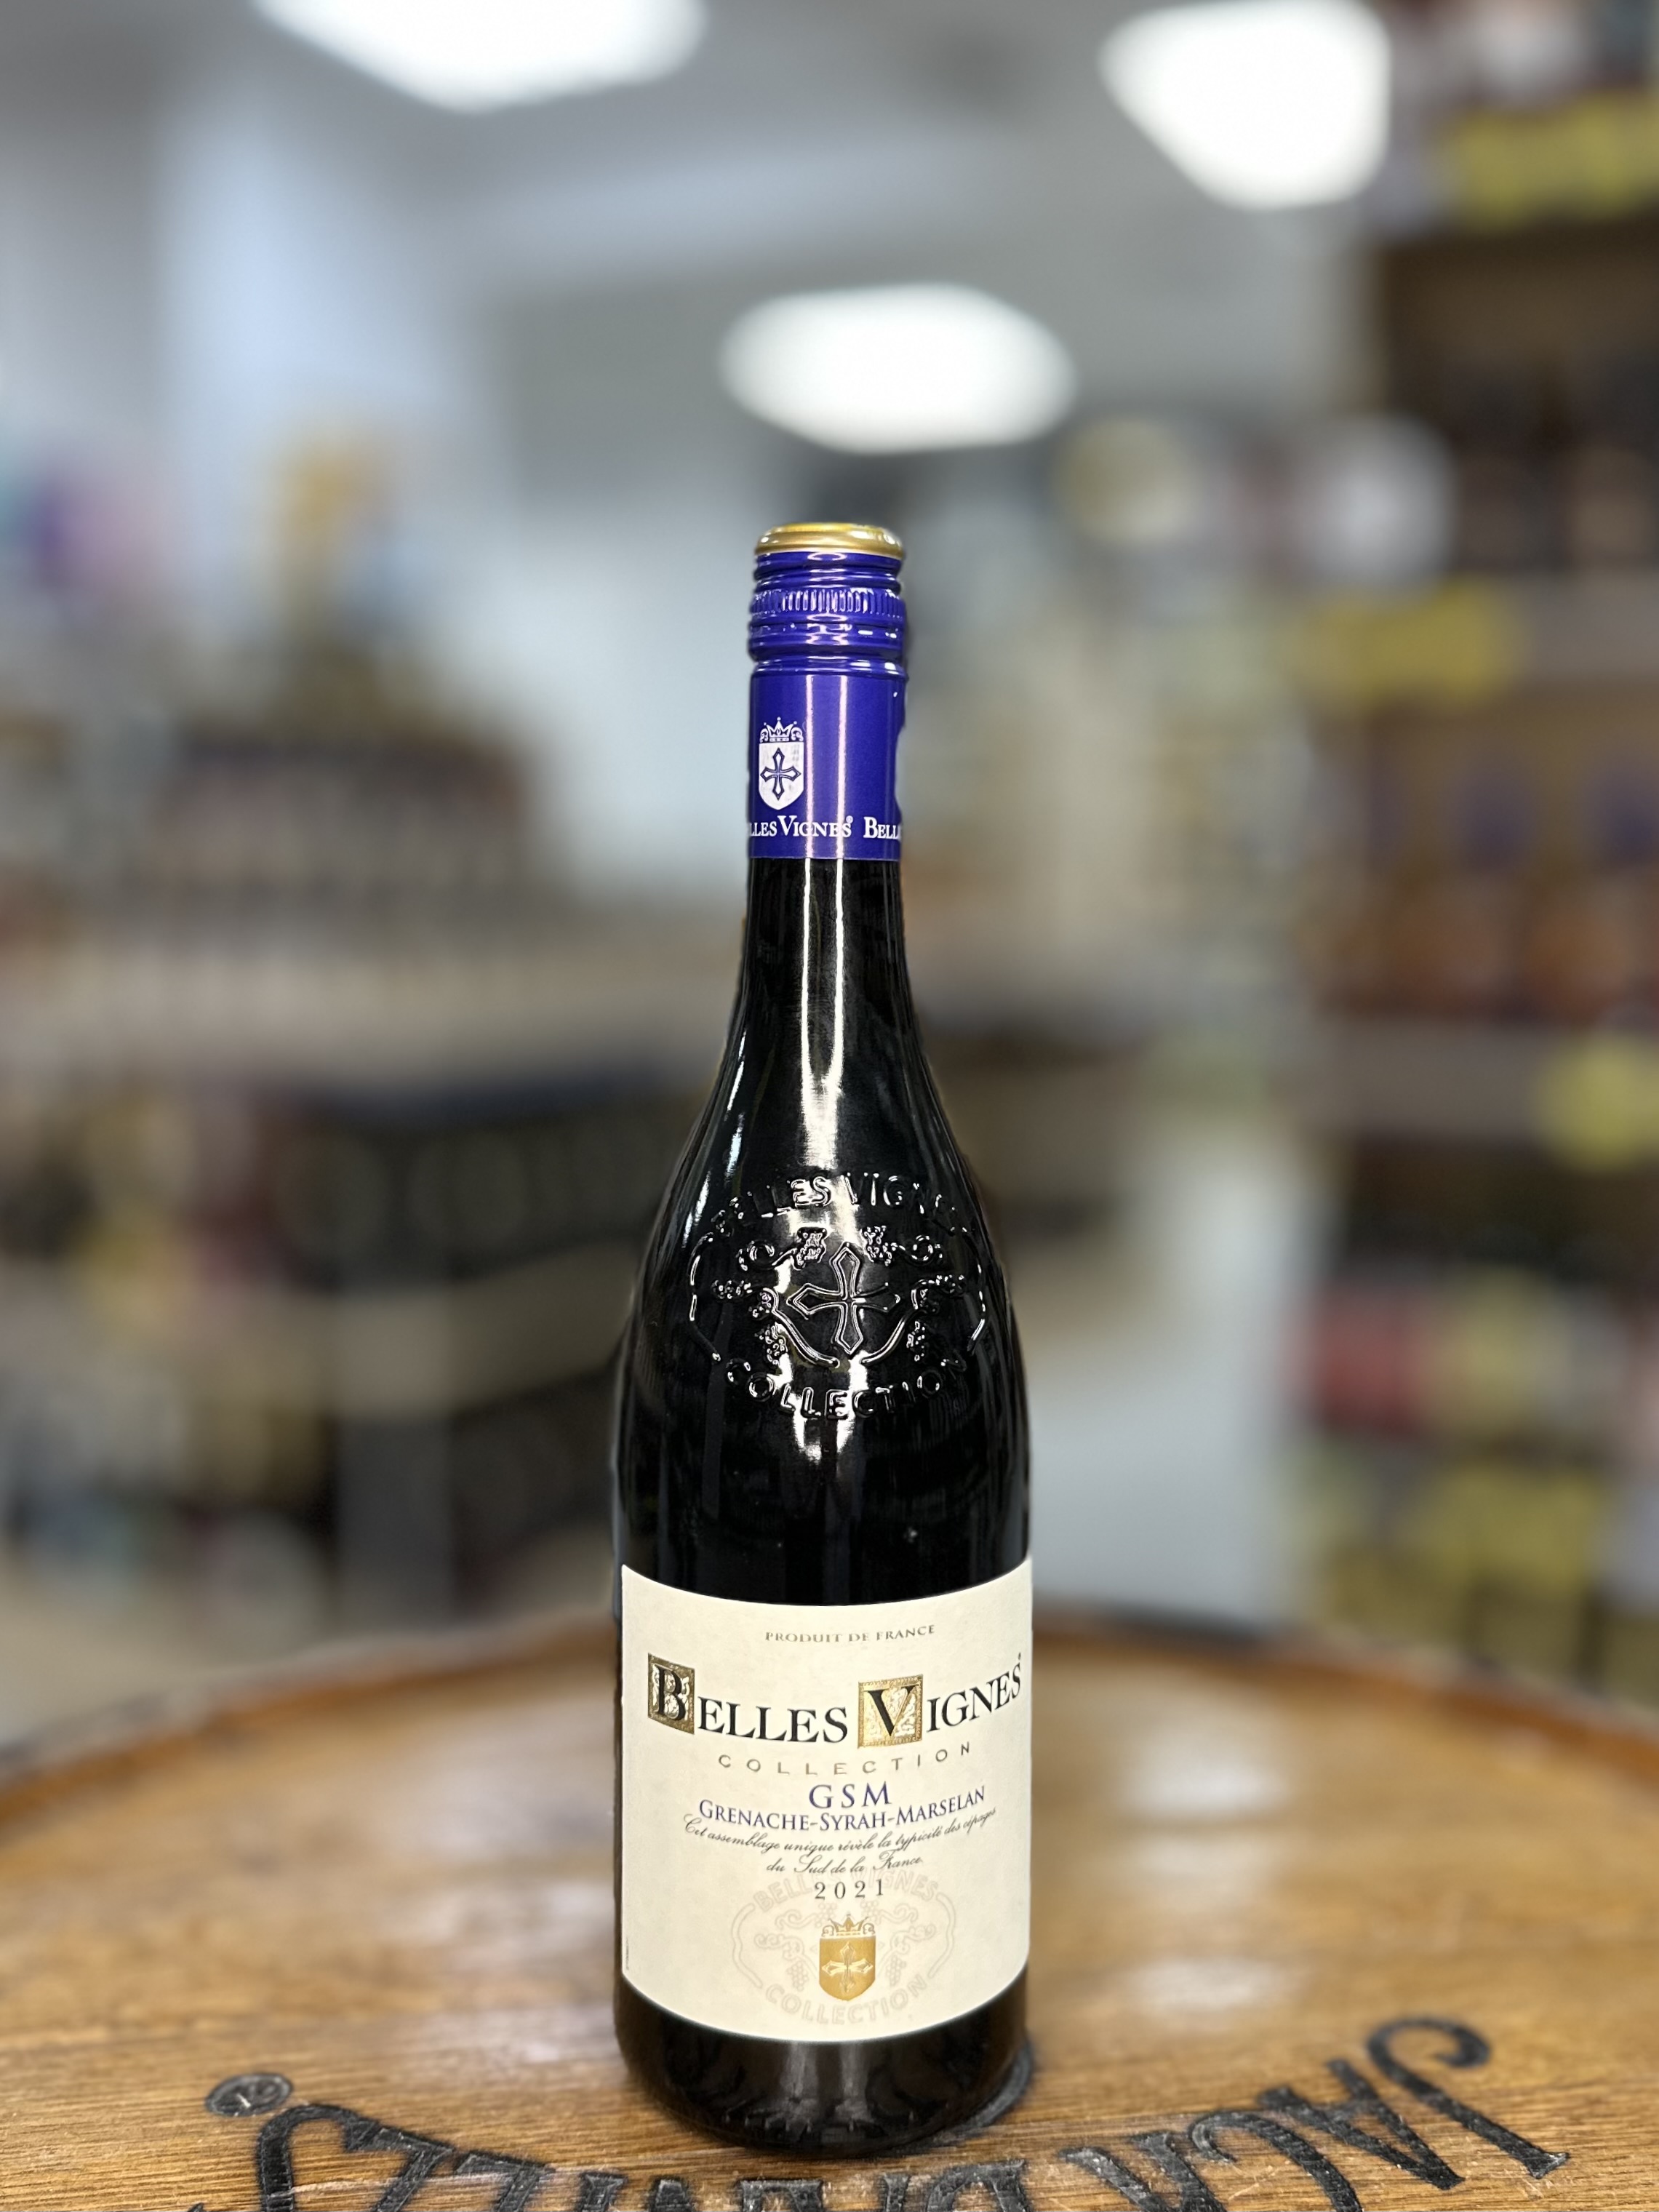 Французское вино  Бель Винь Коллексьон Гренаш Сира Марселан